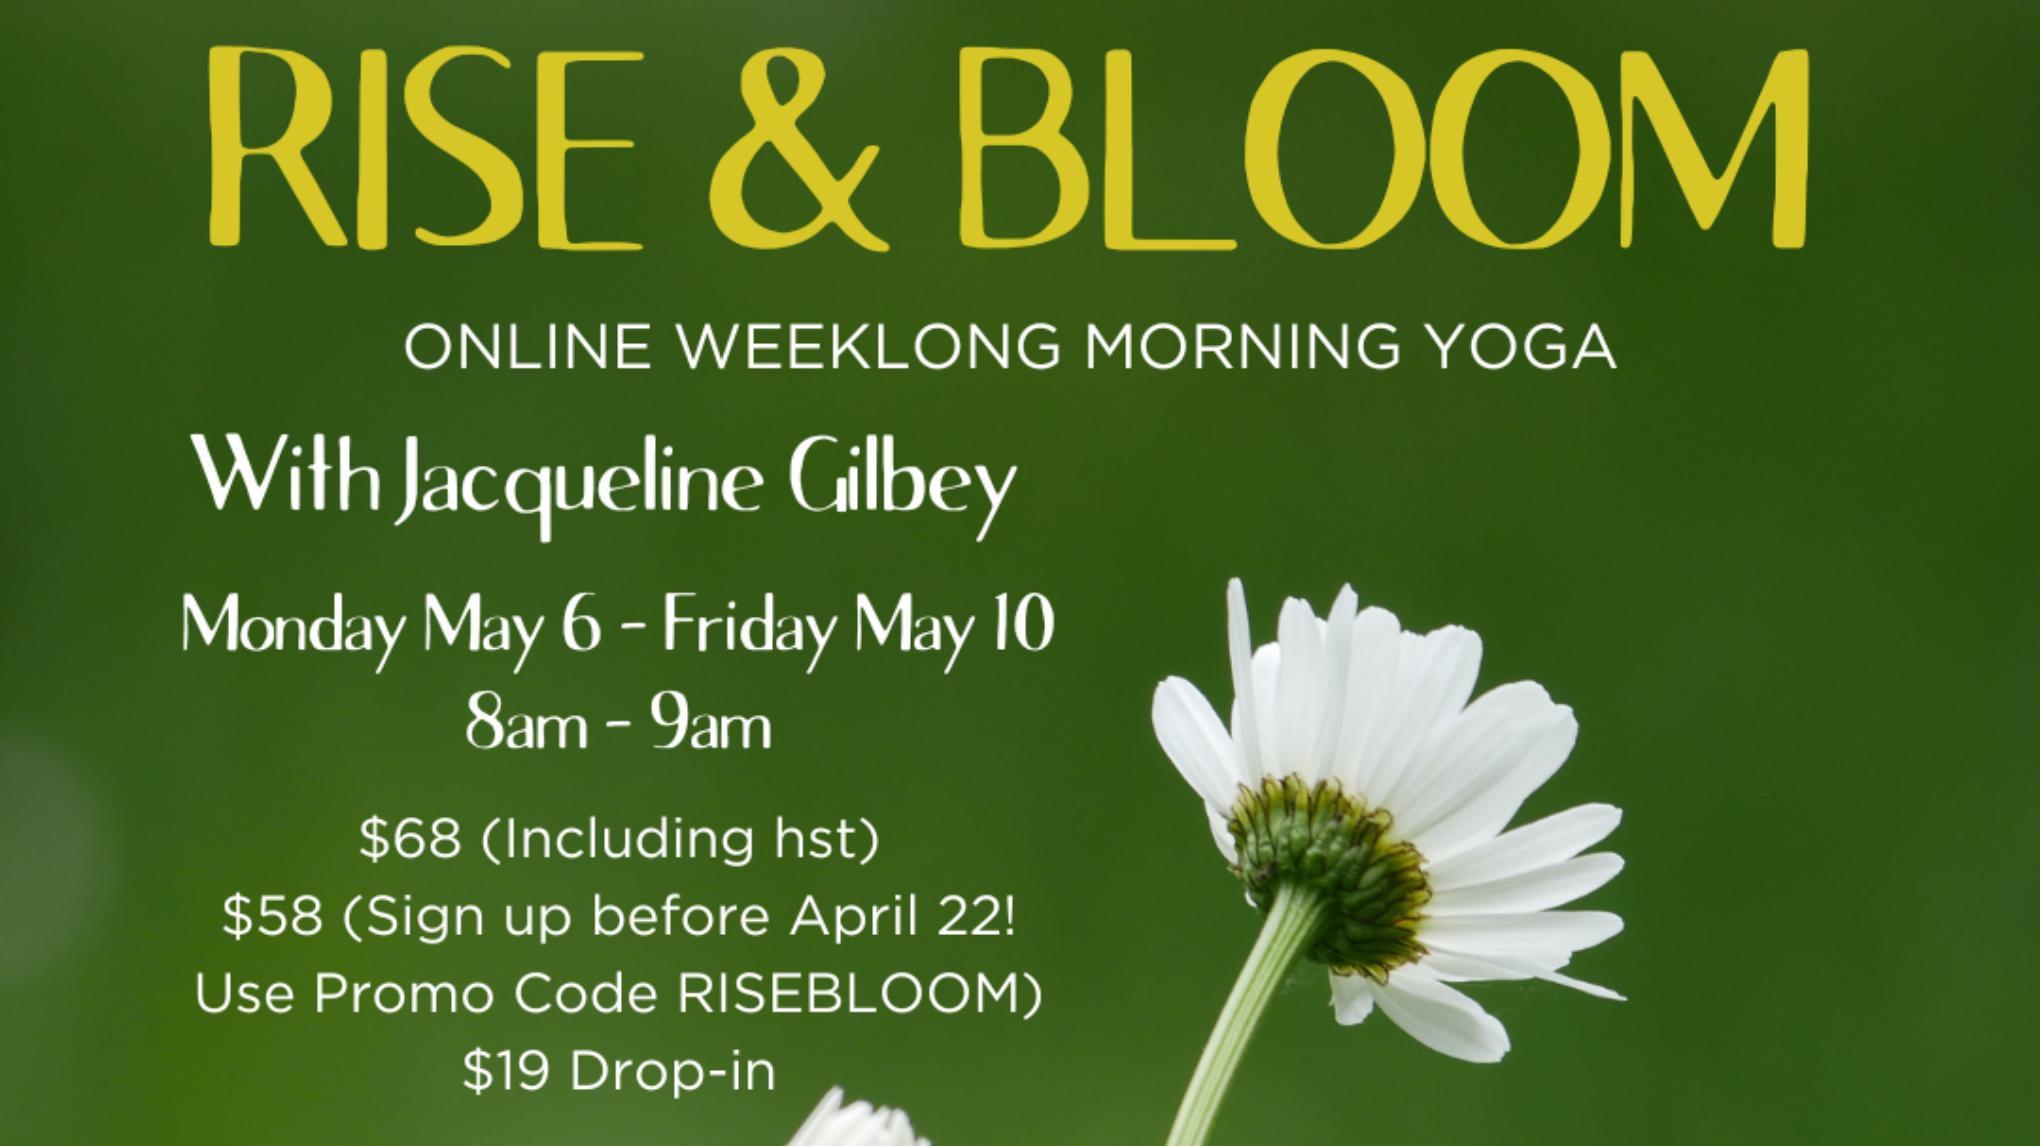 Rise & Bloom Weeklong Morning Yoga: Monday May 6 - Friday May 10, 8am - 9am